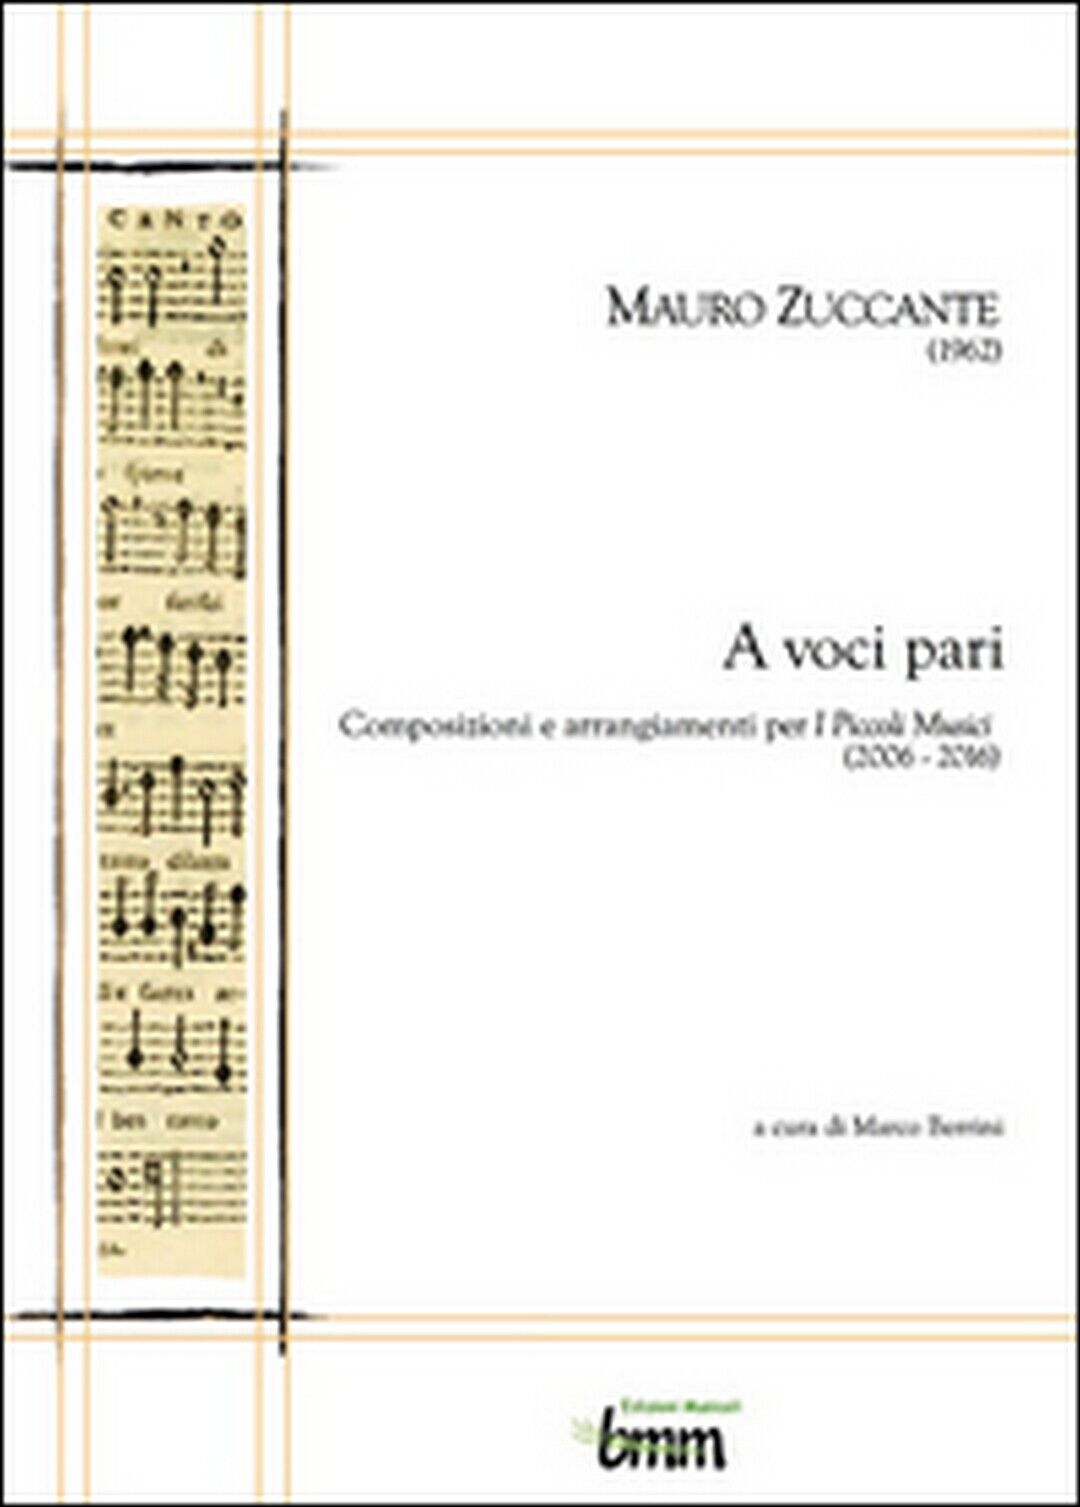 Mauro Zuccante. A voci pari. Composizioni e arrangiamenti per I piccoli musici (